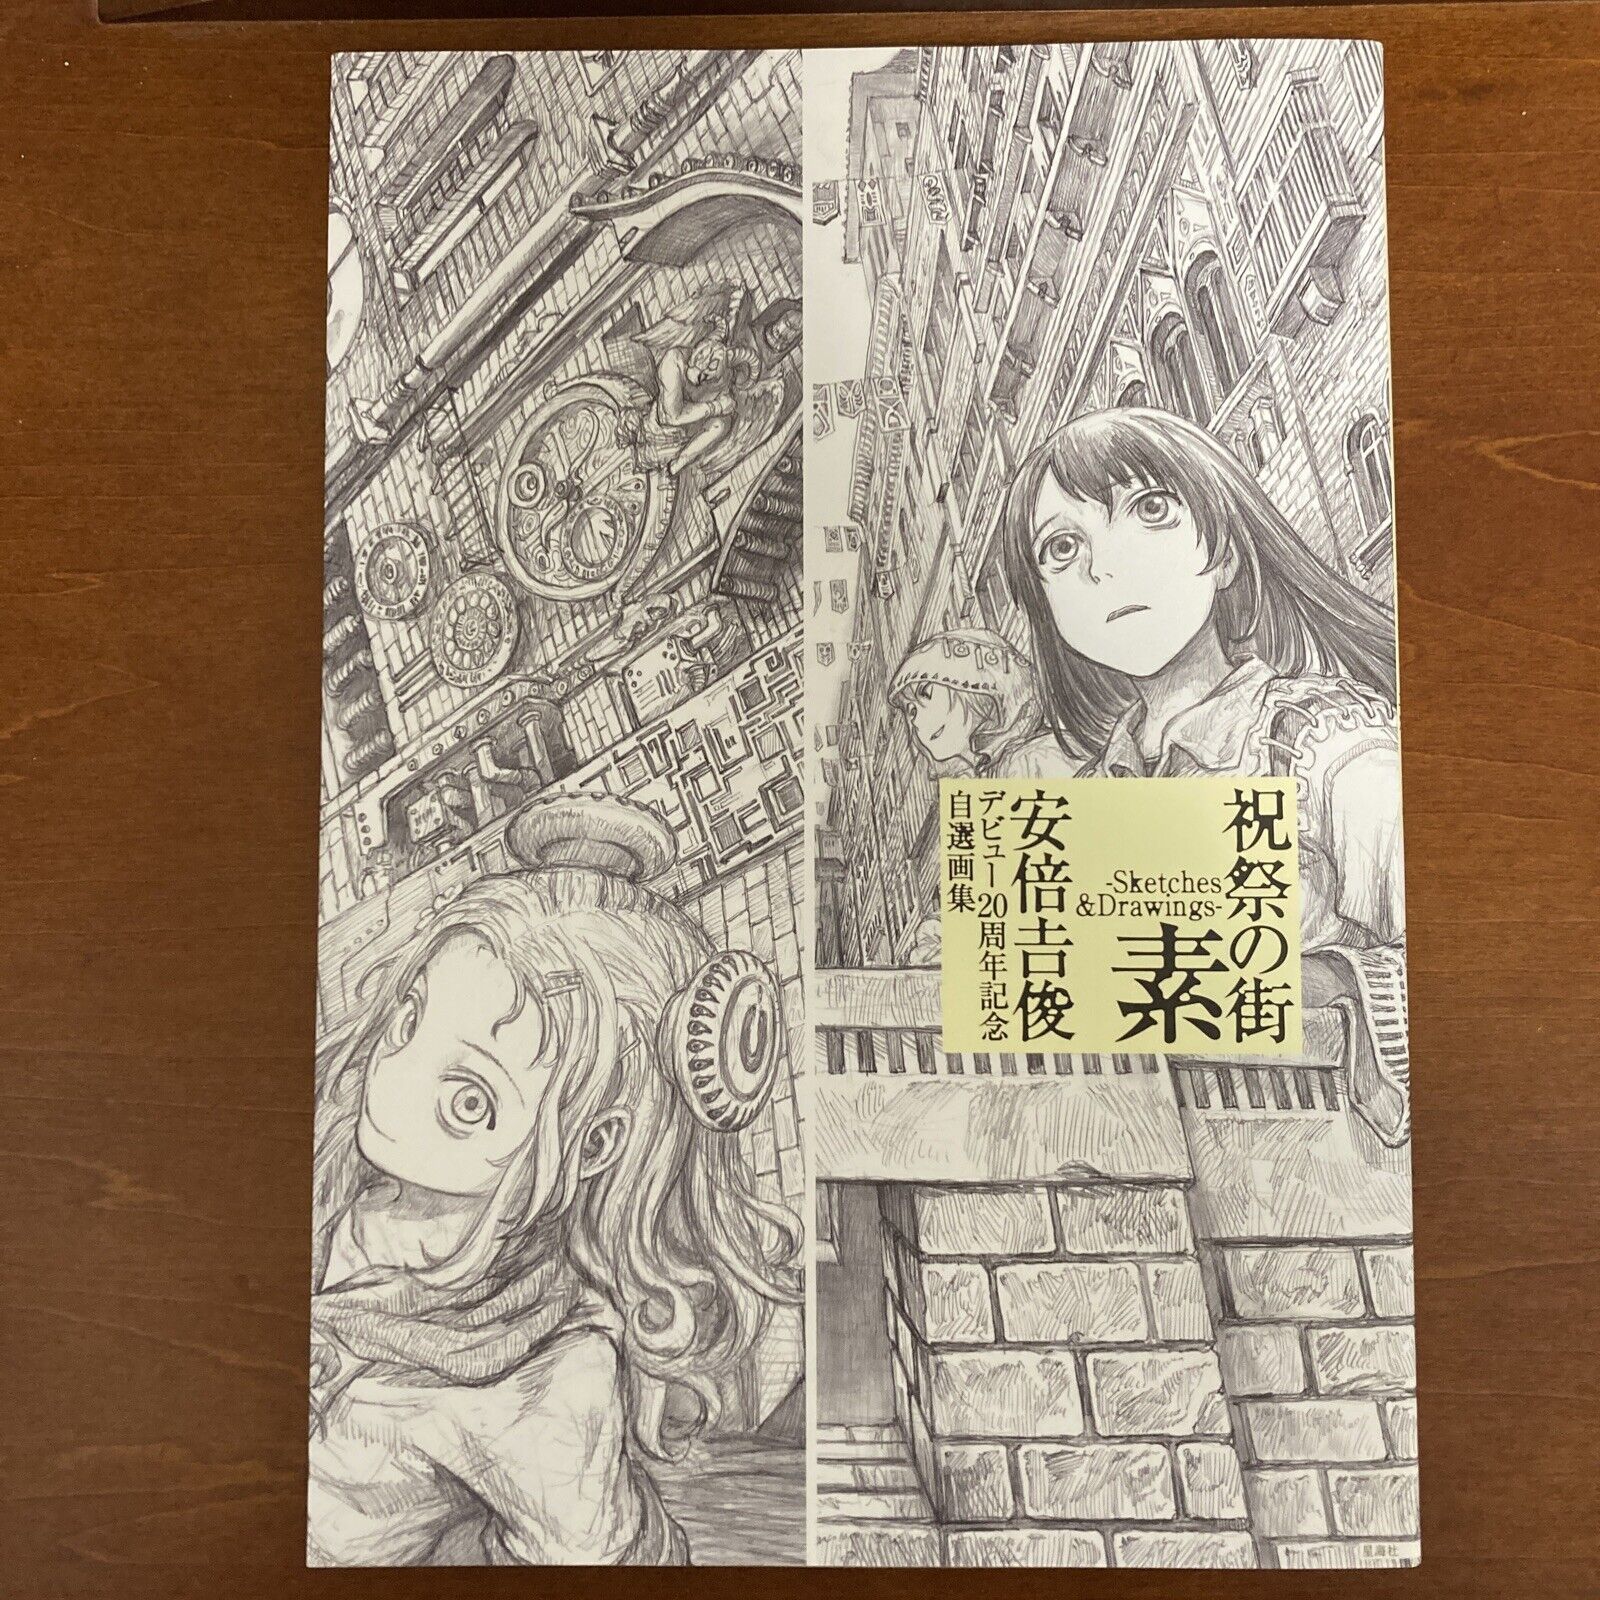 Yoshitoshi Abe 20th Anniversary Art Book Shukusai no Machi Sketches&Drawings